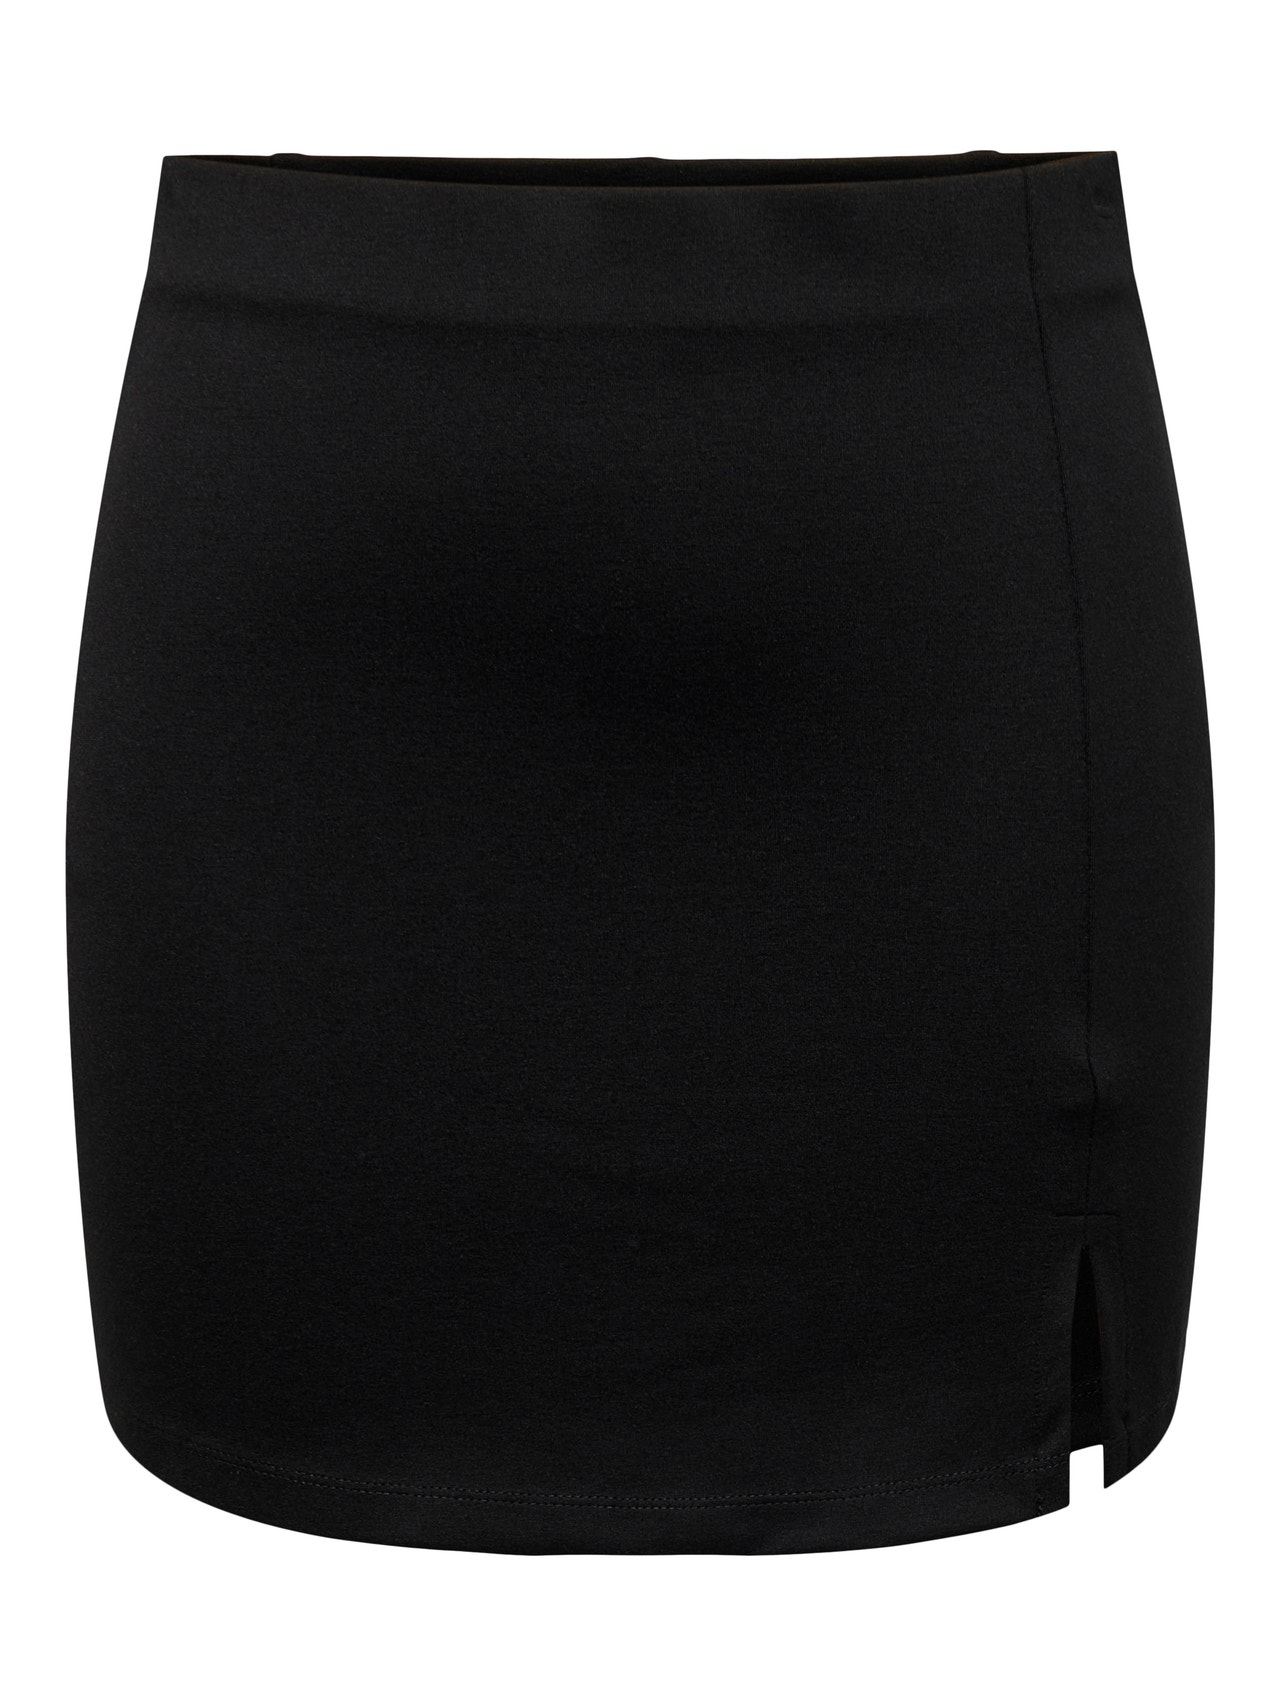 ONLY Short skirt -Black - 15302594